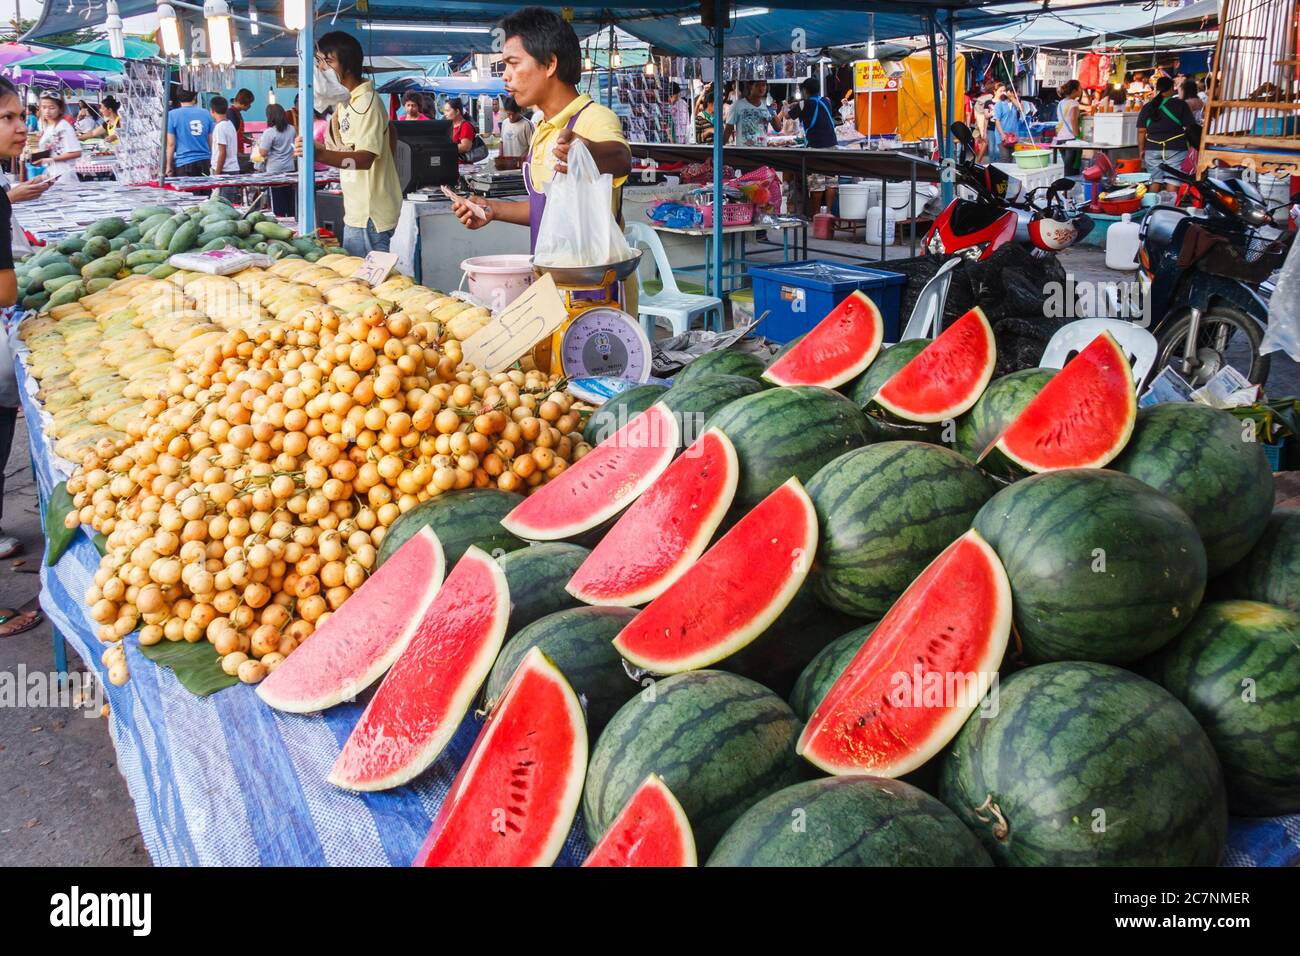 Phuket, Thailandia - 4 aprile 2010: Meloni ad acqua e altri frutti in vendita su uno stand di mercato. Il paese ha un'abbondanza di frutta Foto Stock